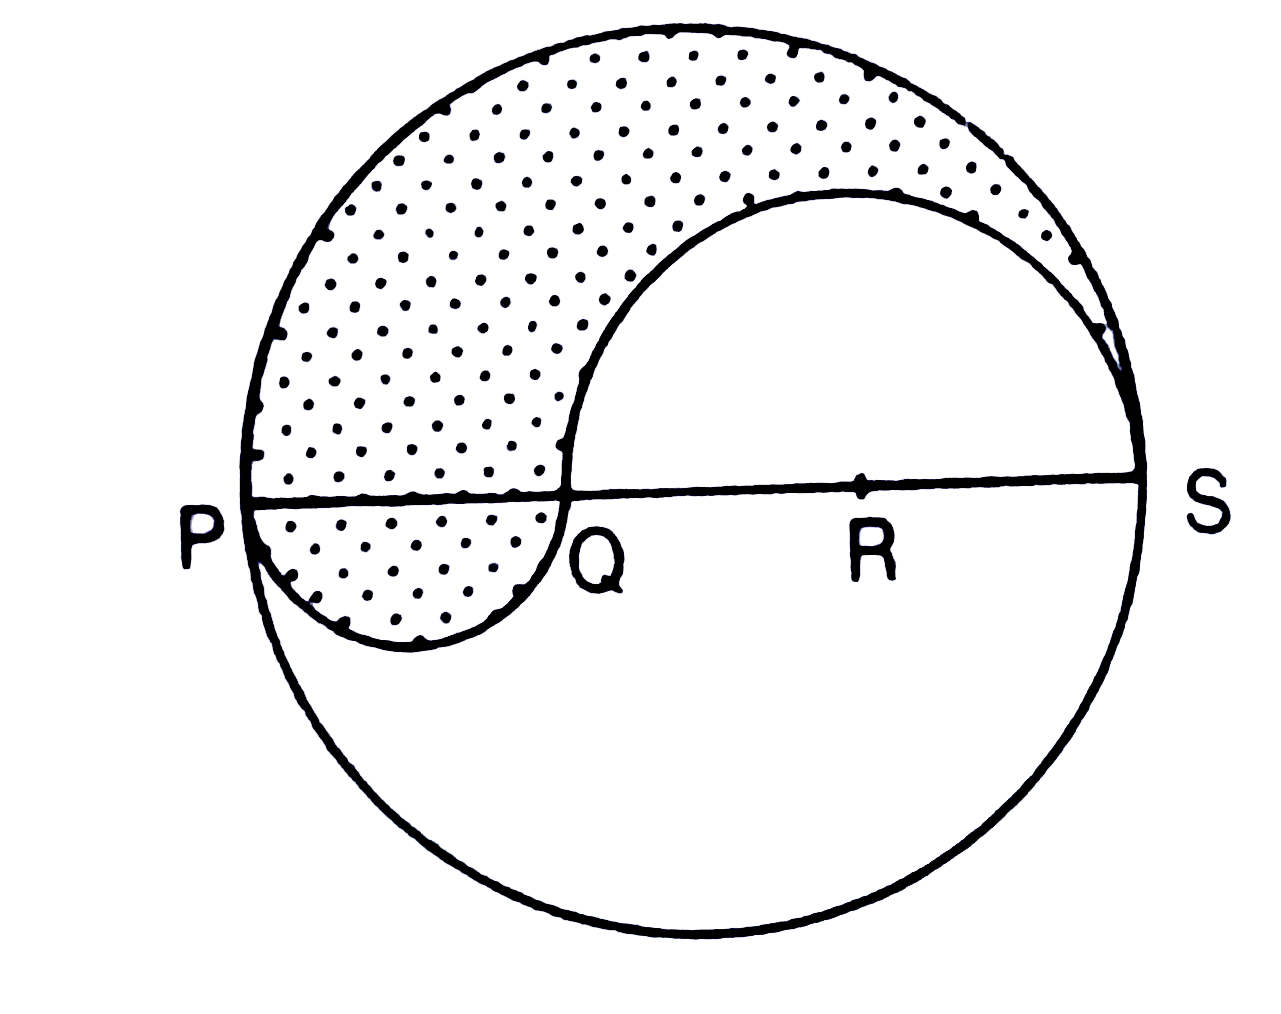 एक 6 सेमी. त्रिज्या के वृत्त का व्यास PQRS इस प्रकार है कि PQ, QR और RS बराबर हैं | चित्र के अनुसार PQ और QS को व्यास मानकर अर्धवृत्त खींचे गये हैं | छायांकित भाग का परिमाप तथा क्षेत्रफल ज्ञात कीजिये |